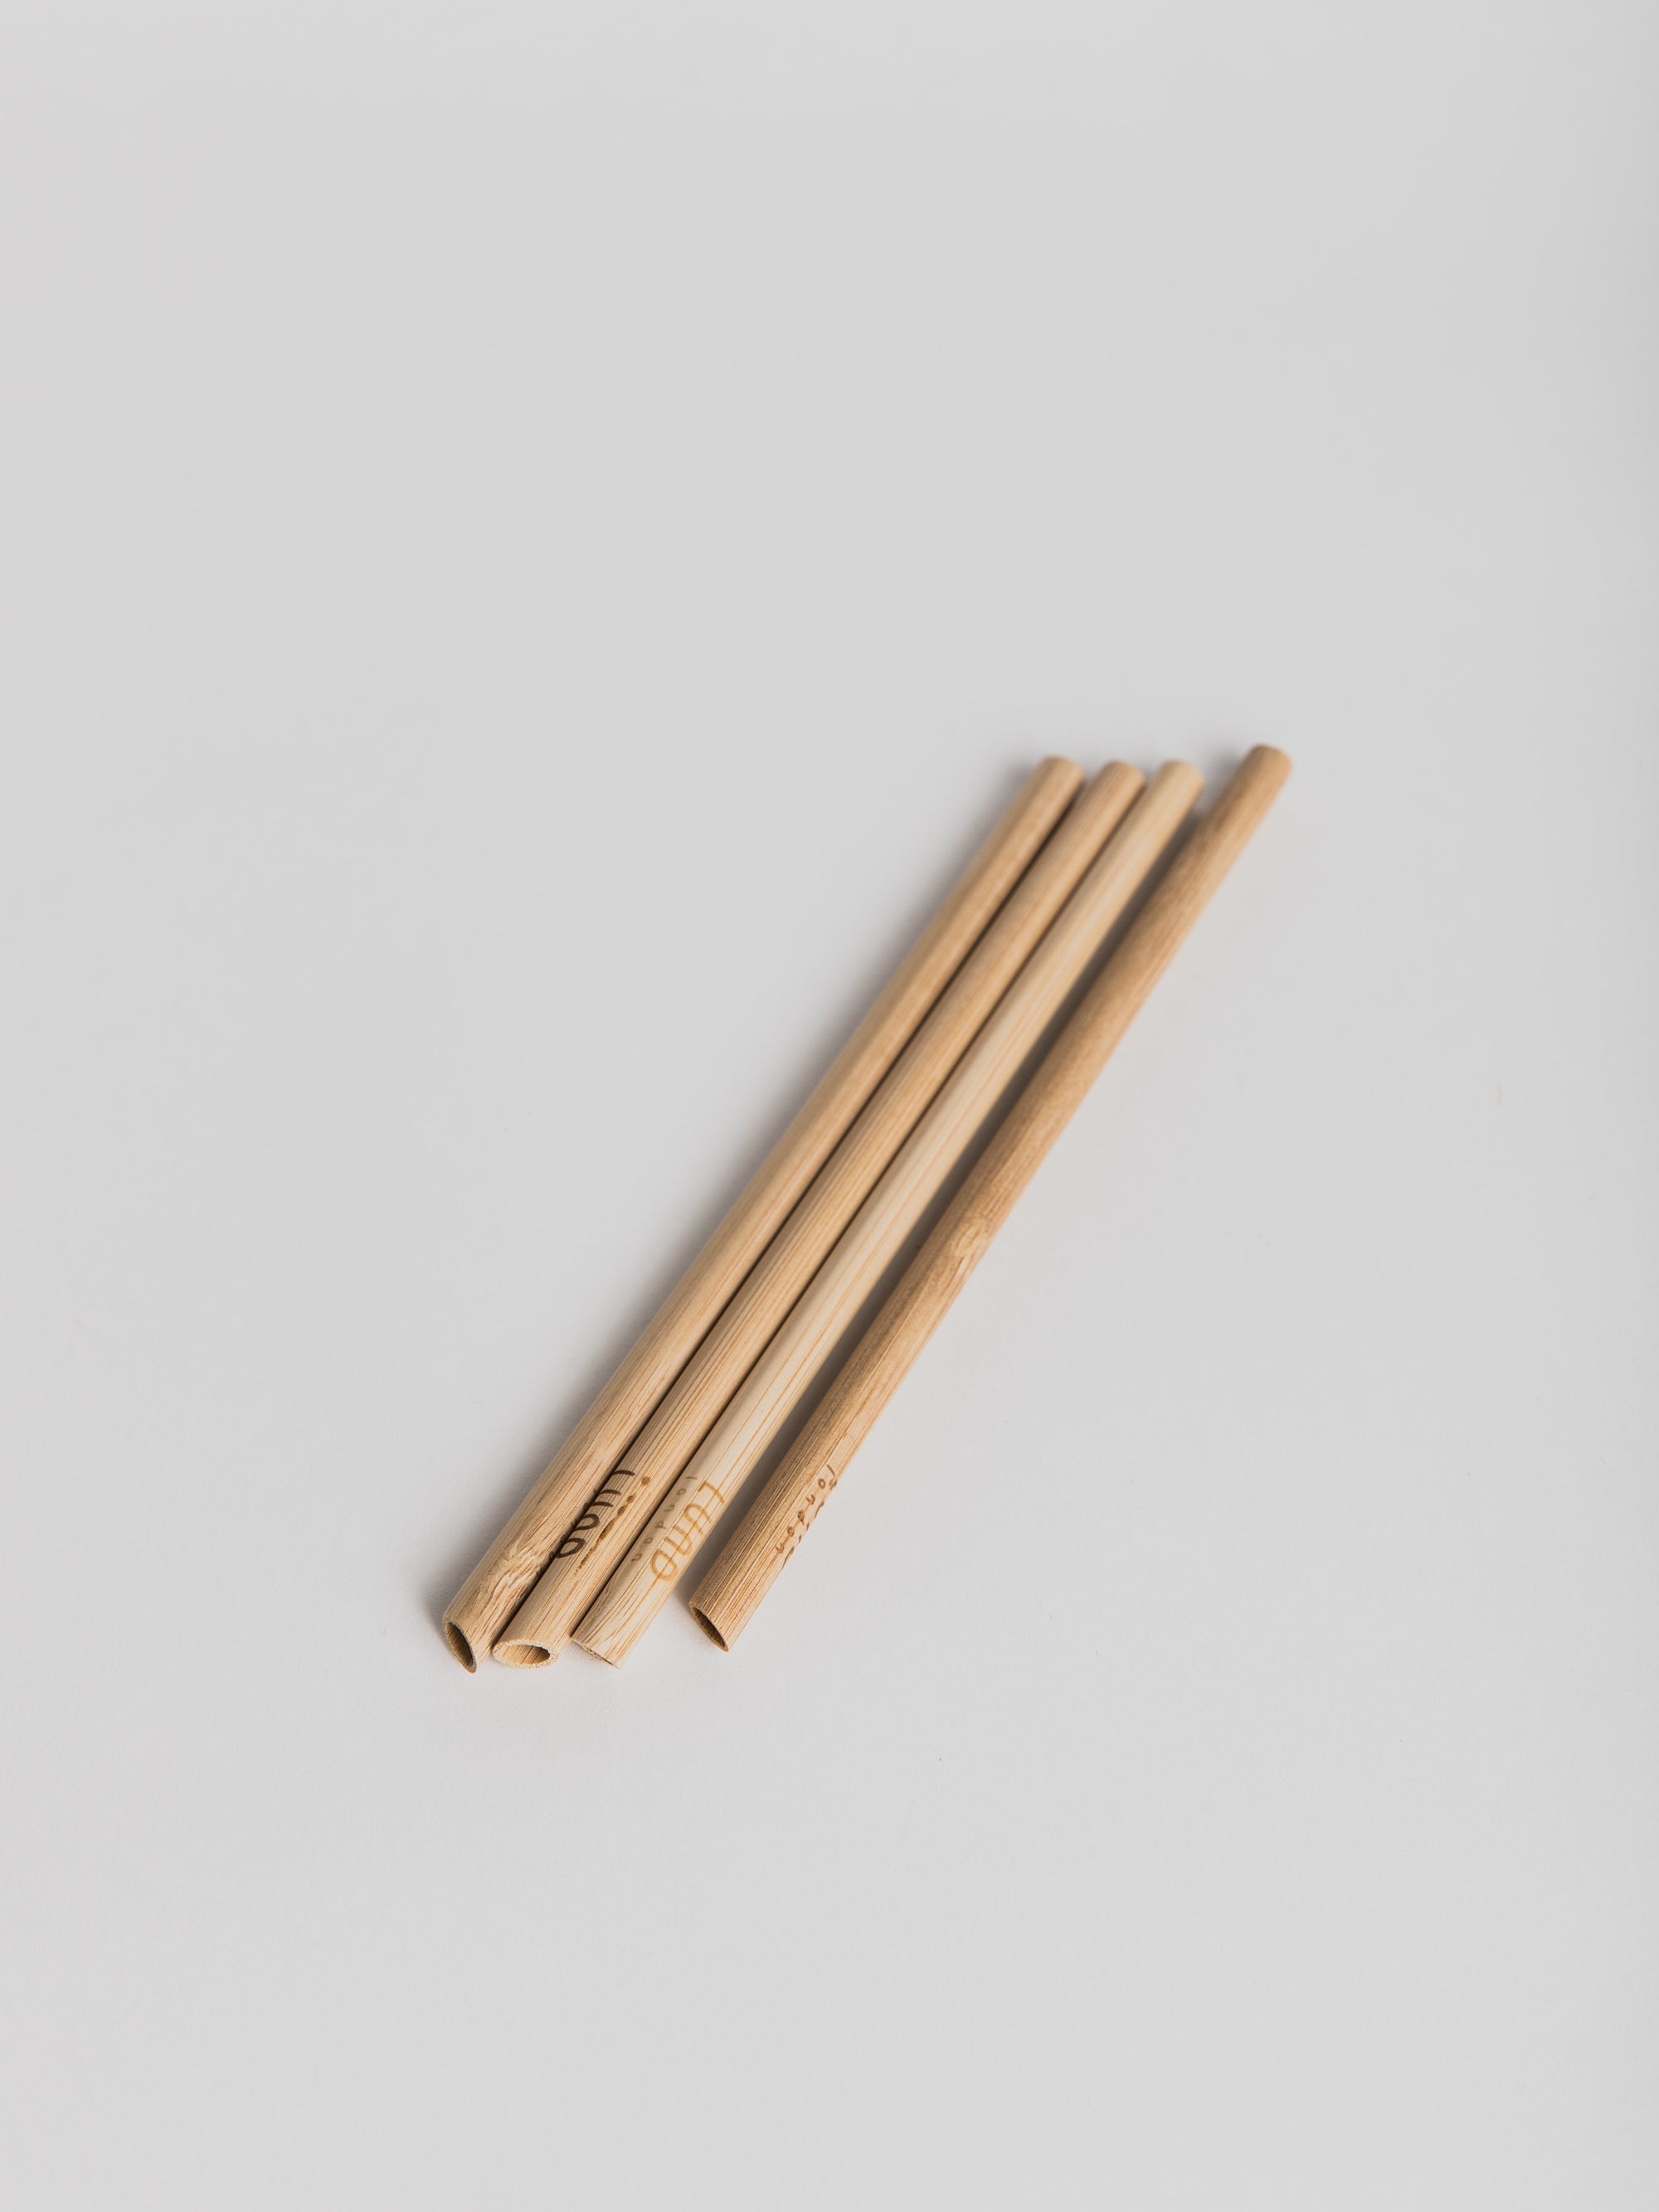 Wooden Straw - Set of 4 Straw LUND London 